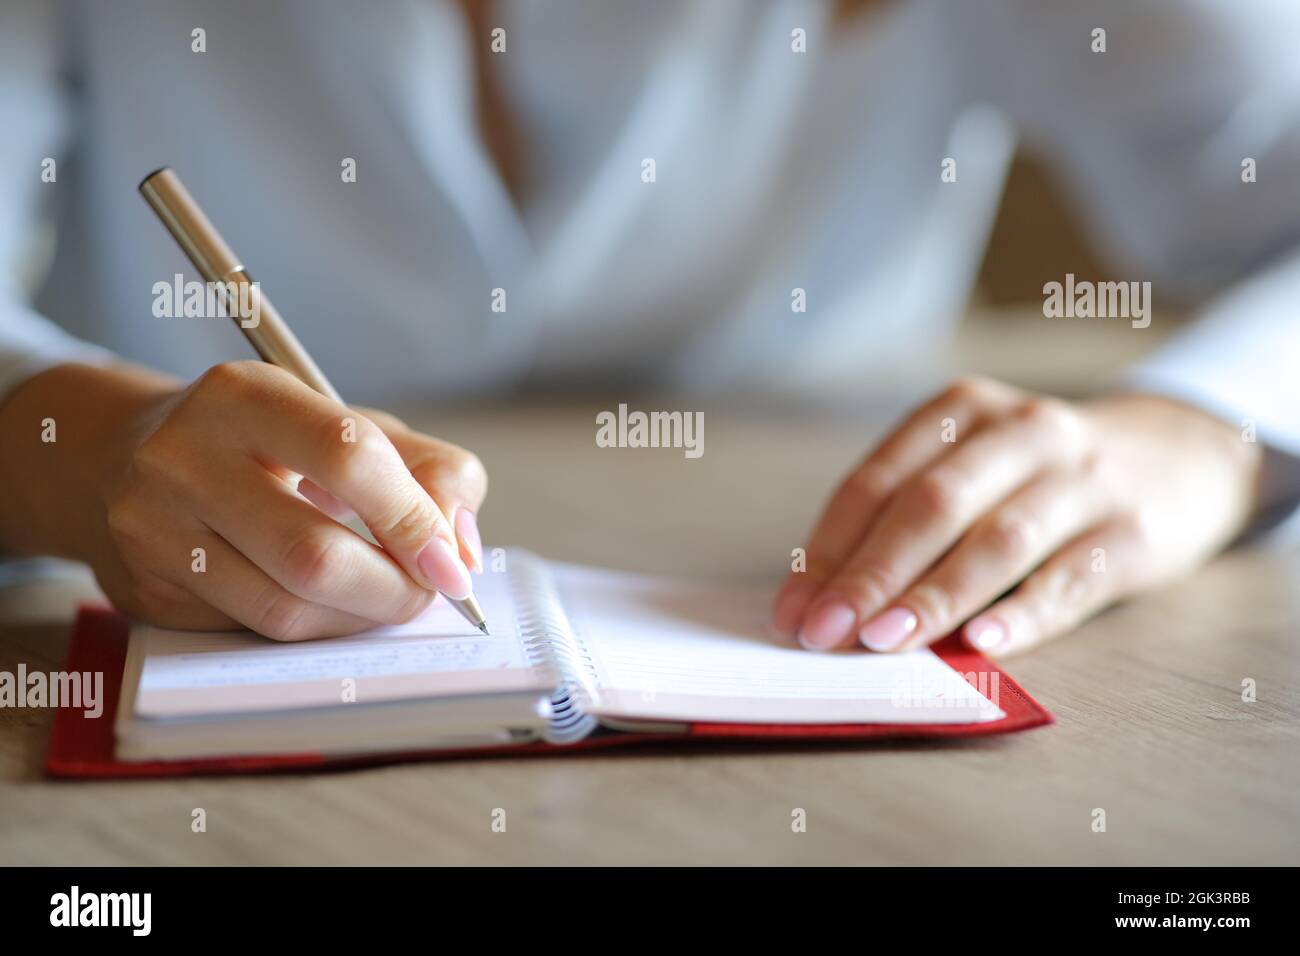 Gros plan d'une femme mains écriture manuscrite sur l'ordre du jour papier Banque D'Images